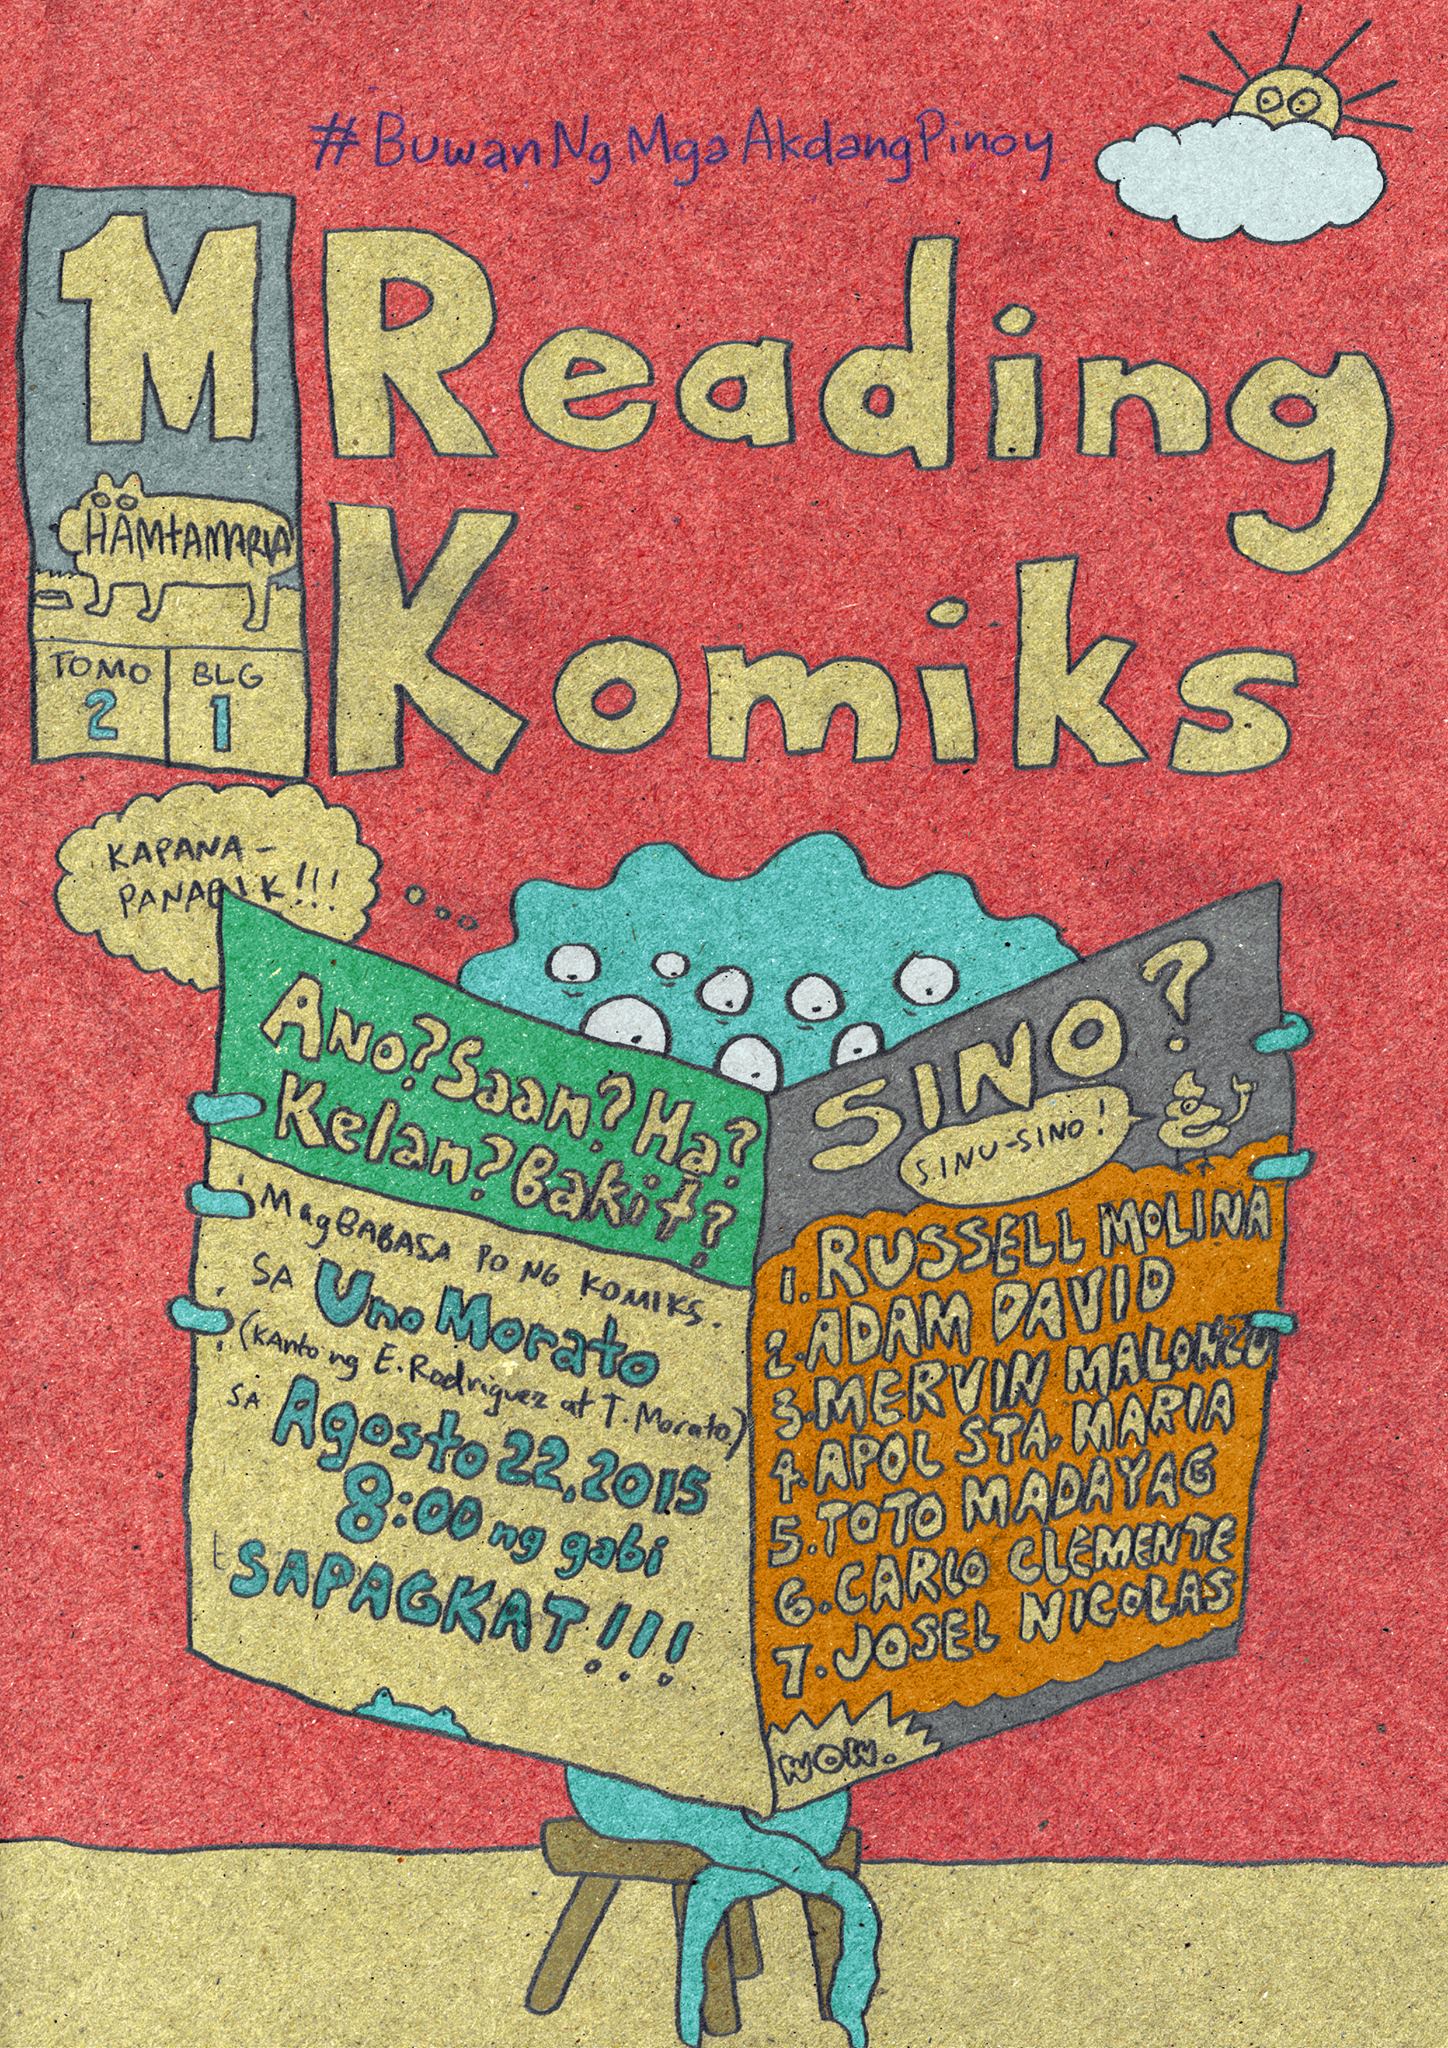 Reading Komiks, Tomo 2 Bilang 1 | Agimat: Sining at Kulturang Pinoy